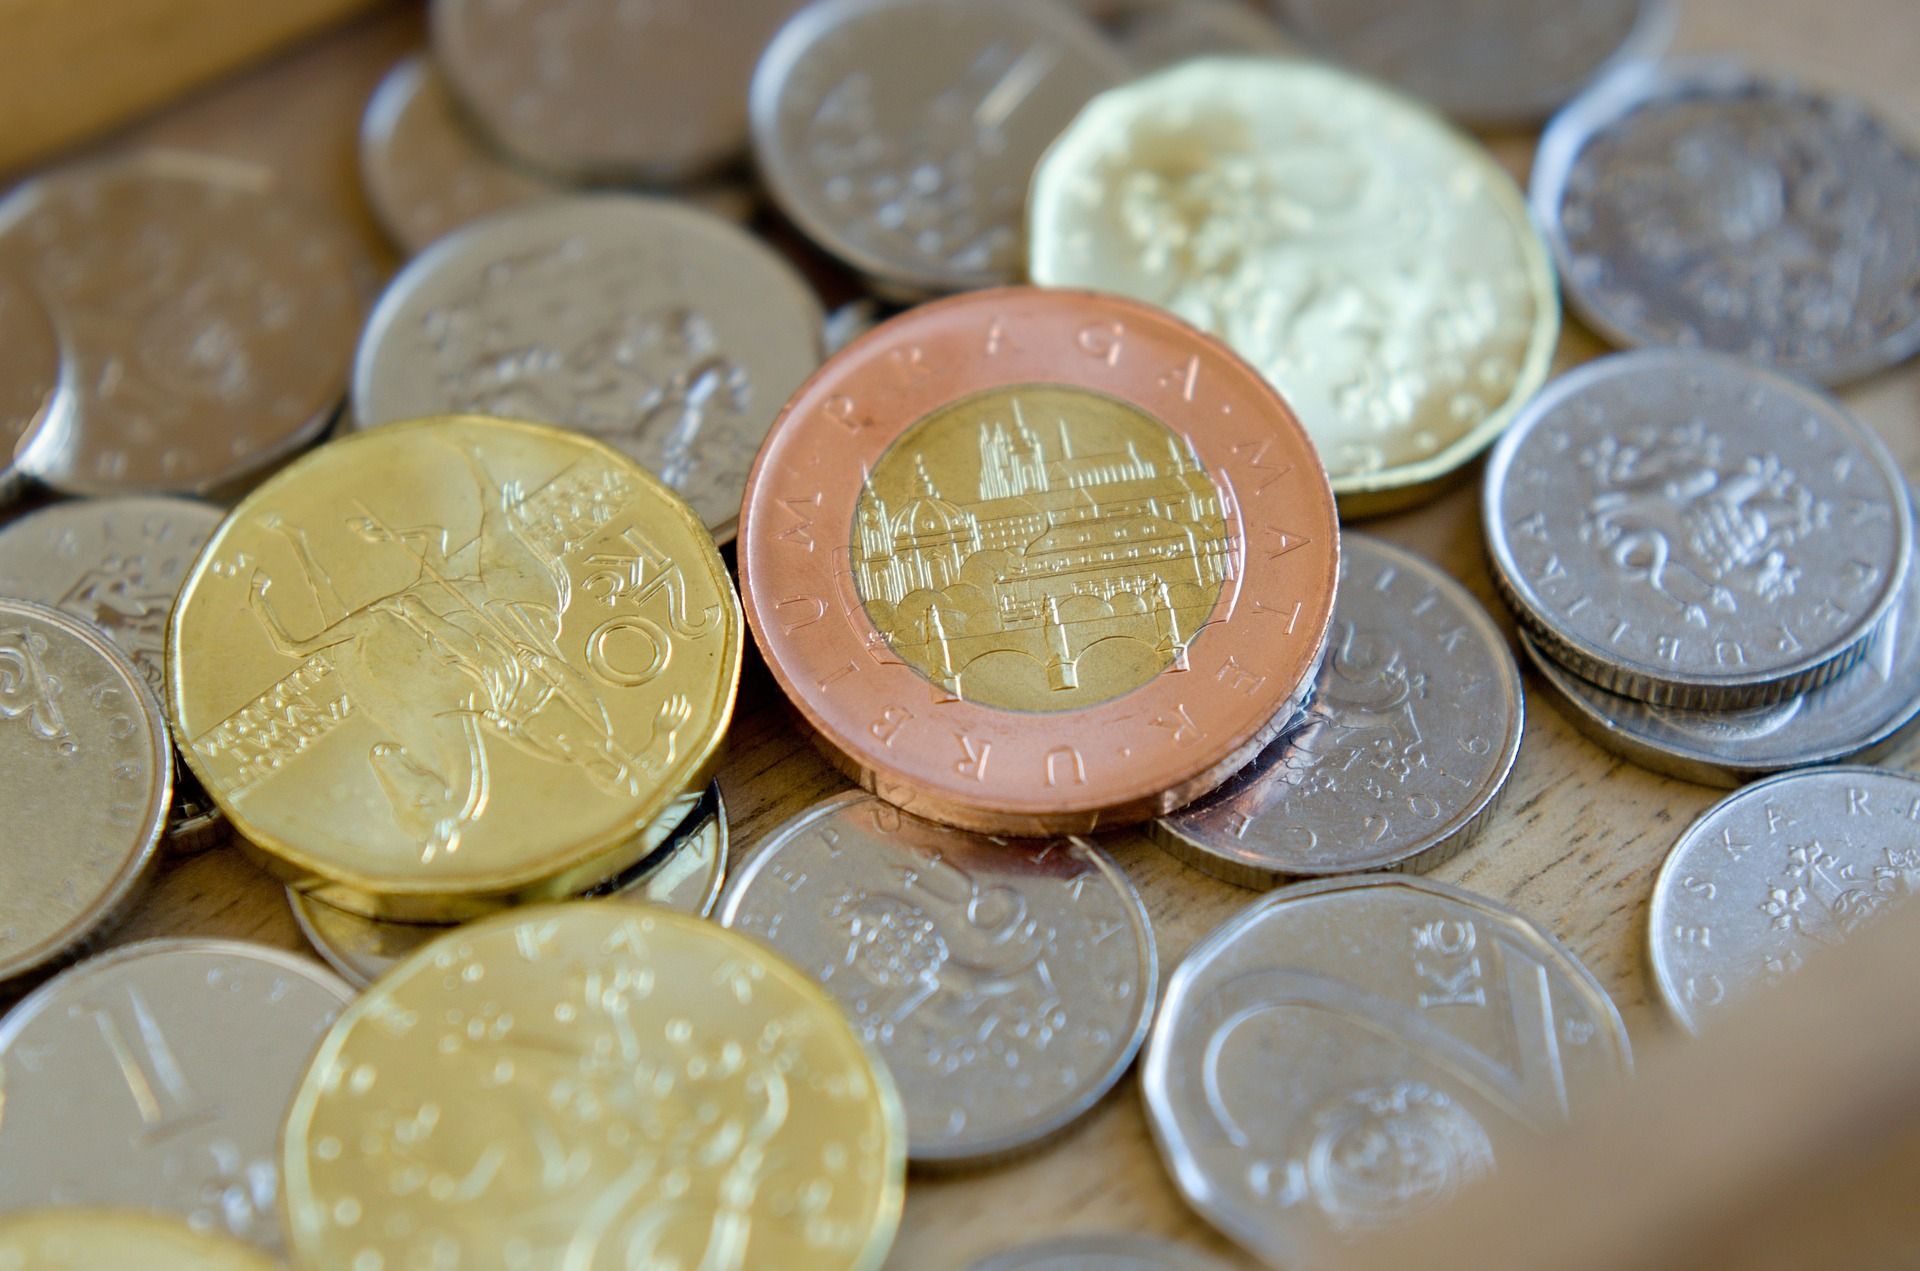 742czech-coins-3718912_1920.jpg